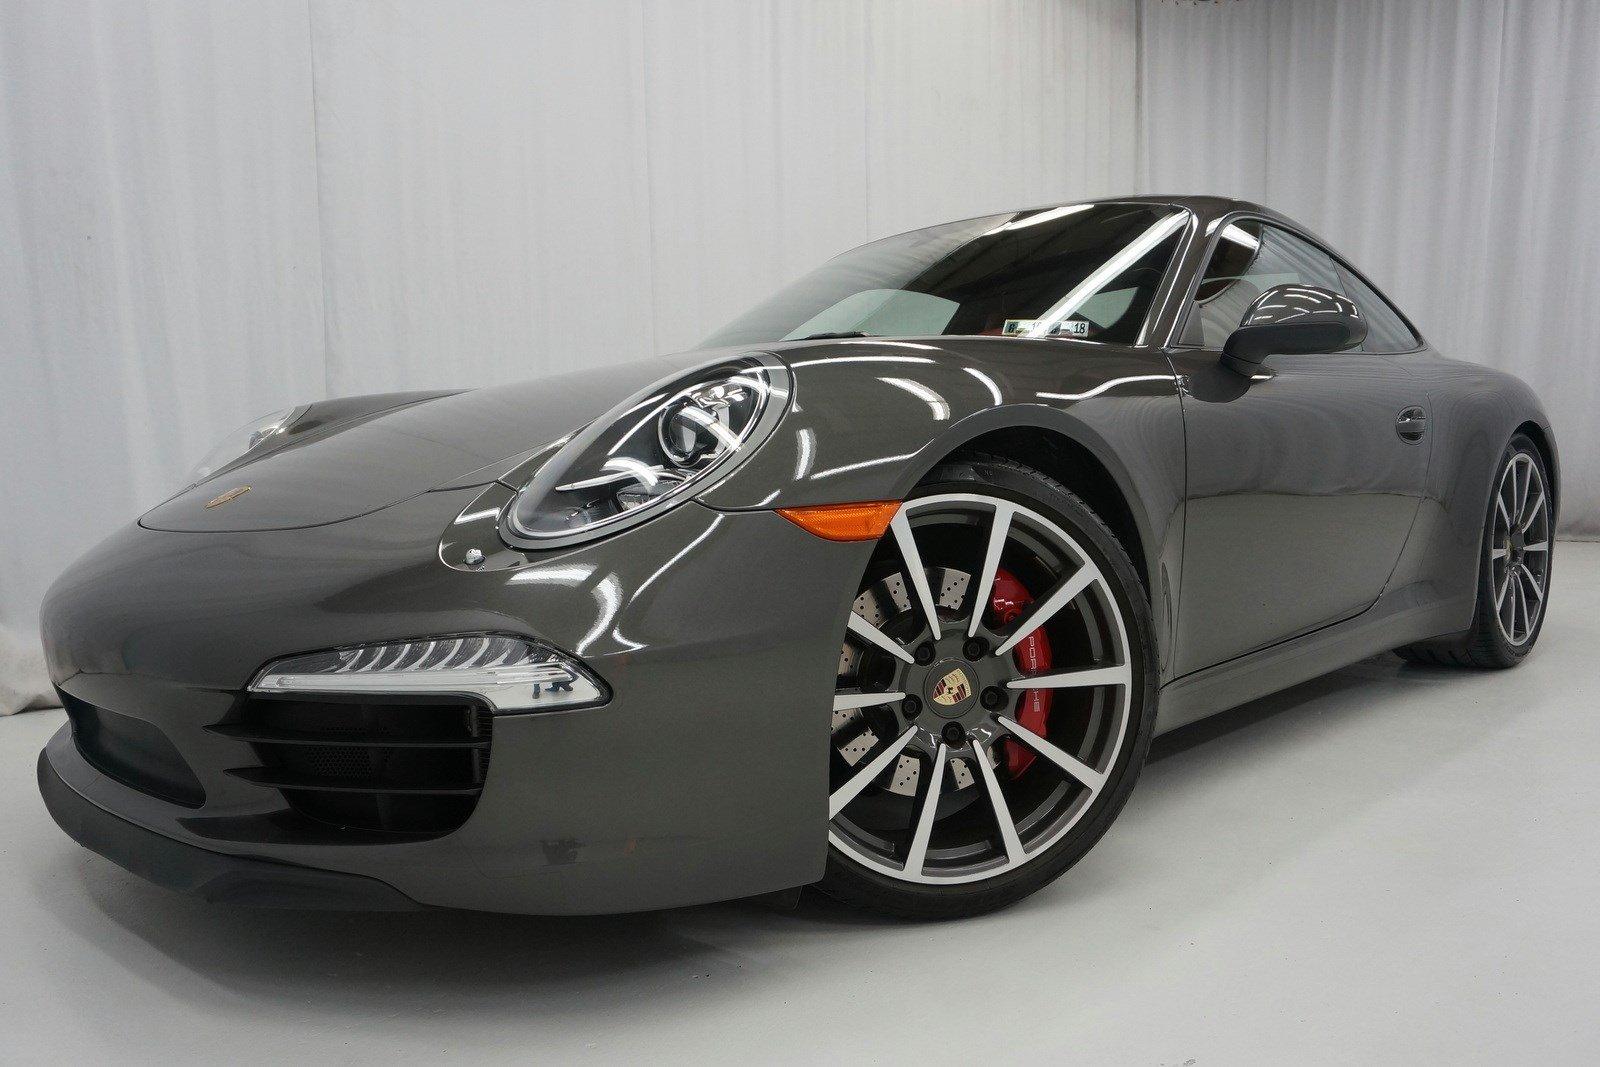 2012 Porsche 911 991 Carrera S Stock S120827 For Sale Near